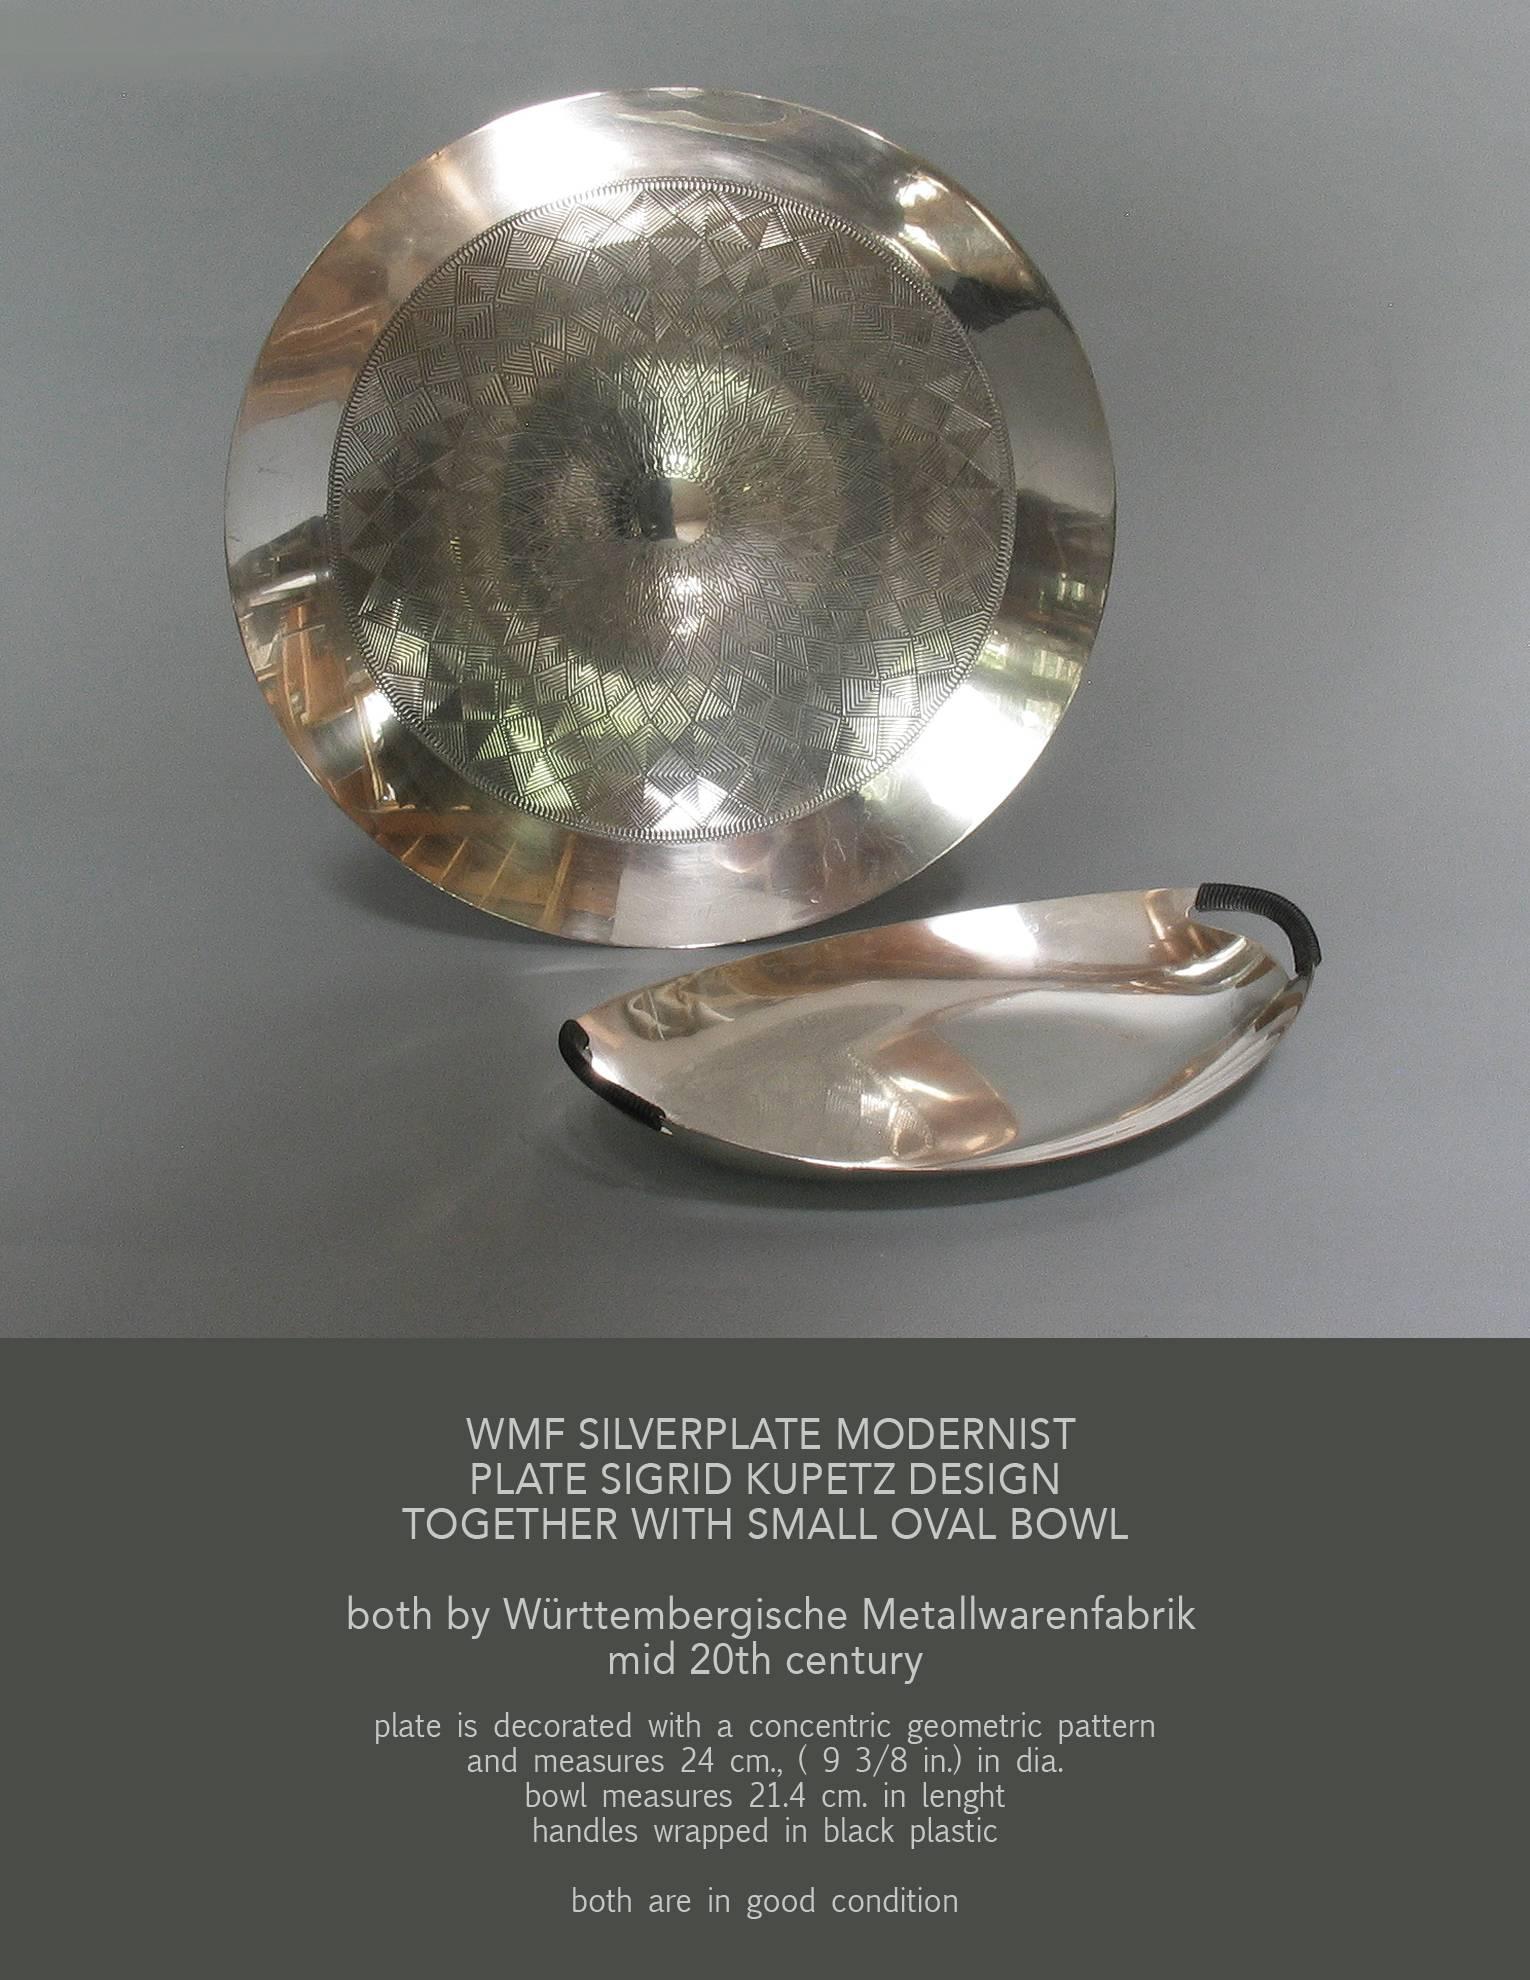 WMF-Silberteller modernistisches Design Sigrid Kupetz mit kleiner ovaler Schale, beide von der Württembergischen Metallwarenfabrik, Mitte 20. Der Teller ist mit konzentrischen geometrischen Mustern verziert und misst 9 3/8